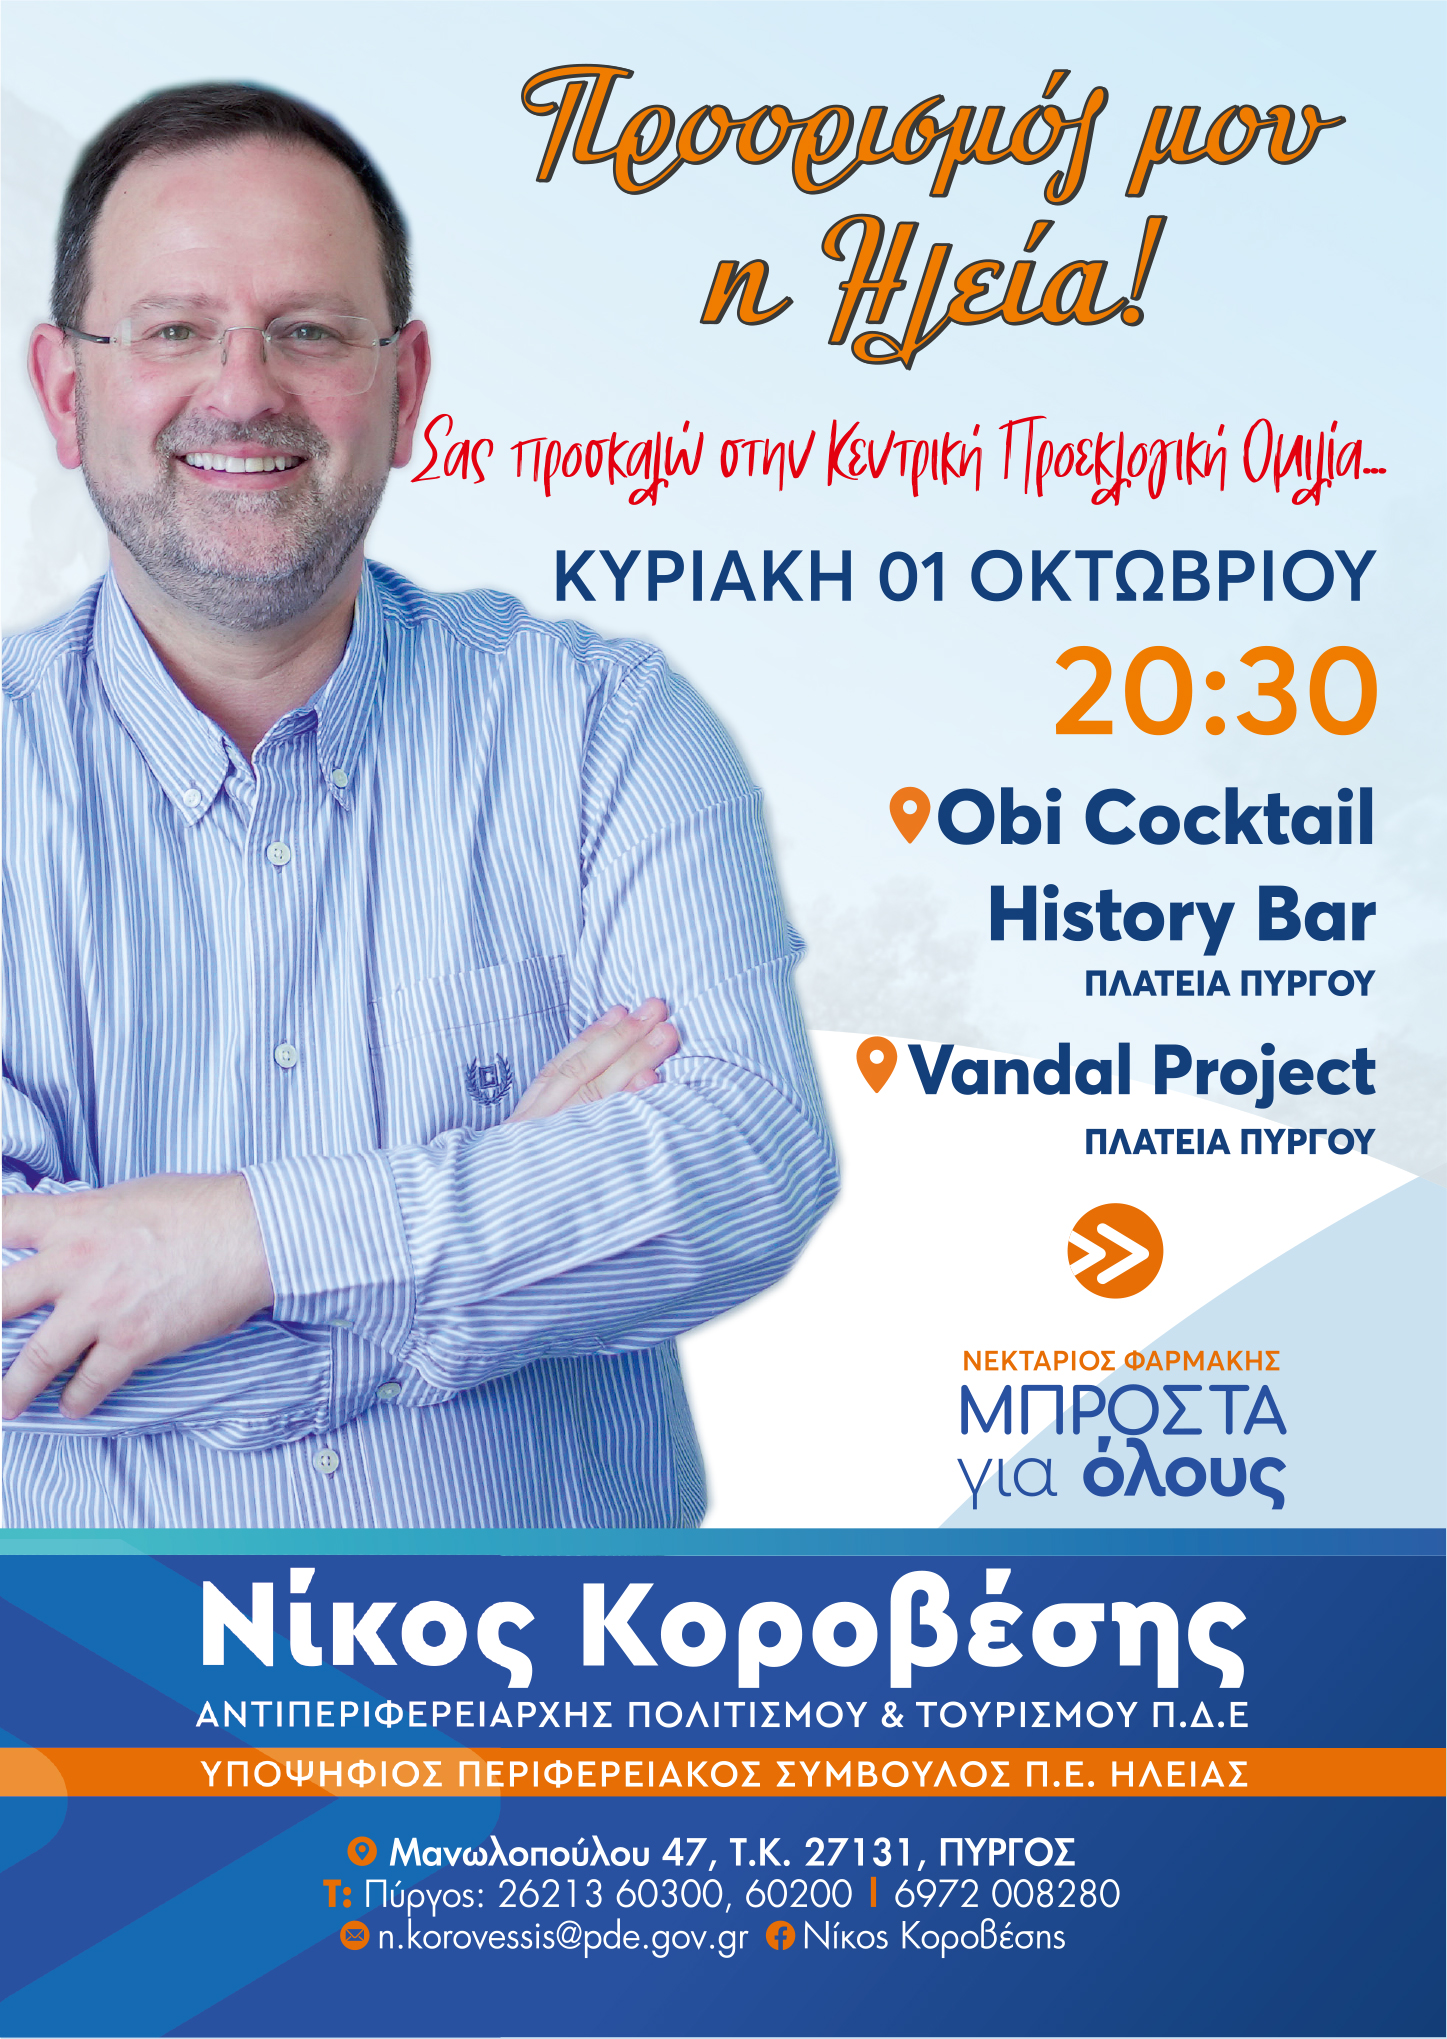 Νίκος Κοροβέσης- Πρόσκληση στην κεντρική ομιλία